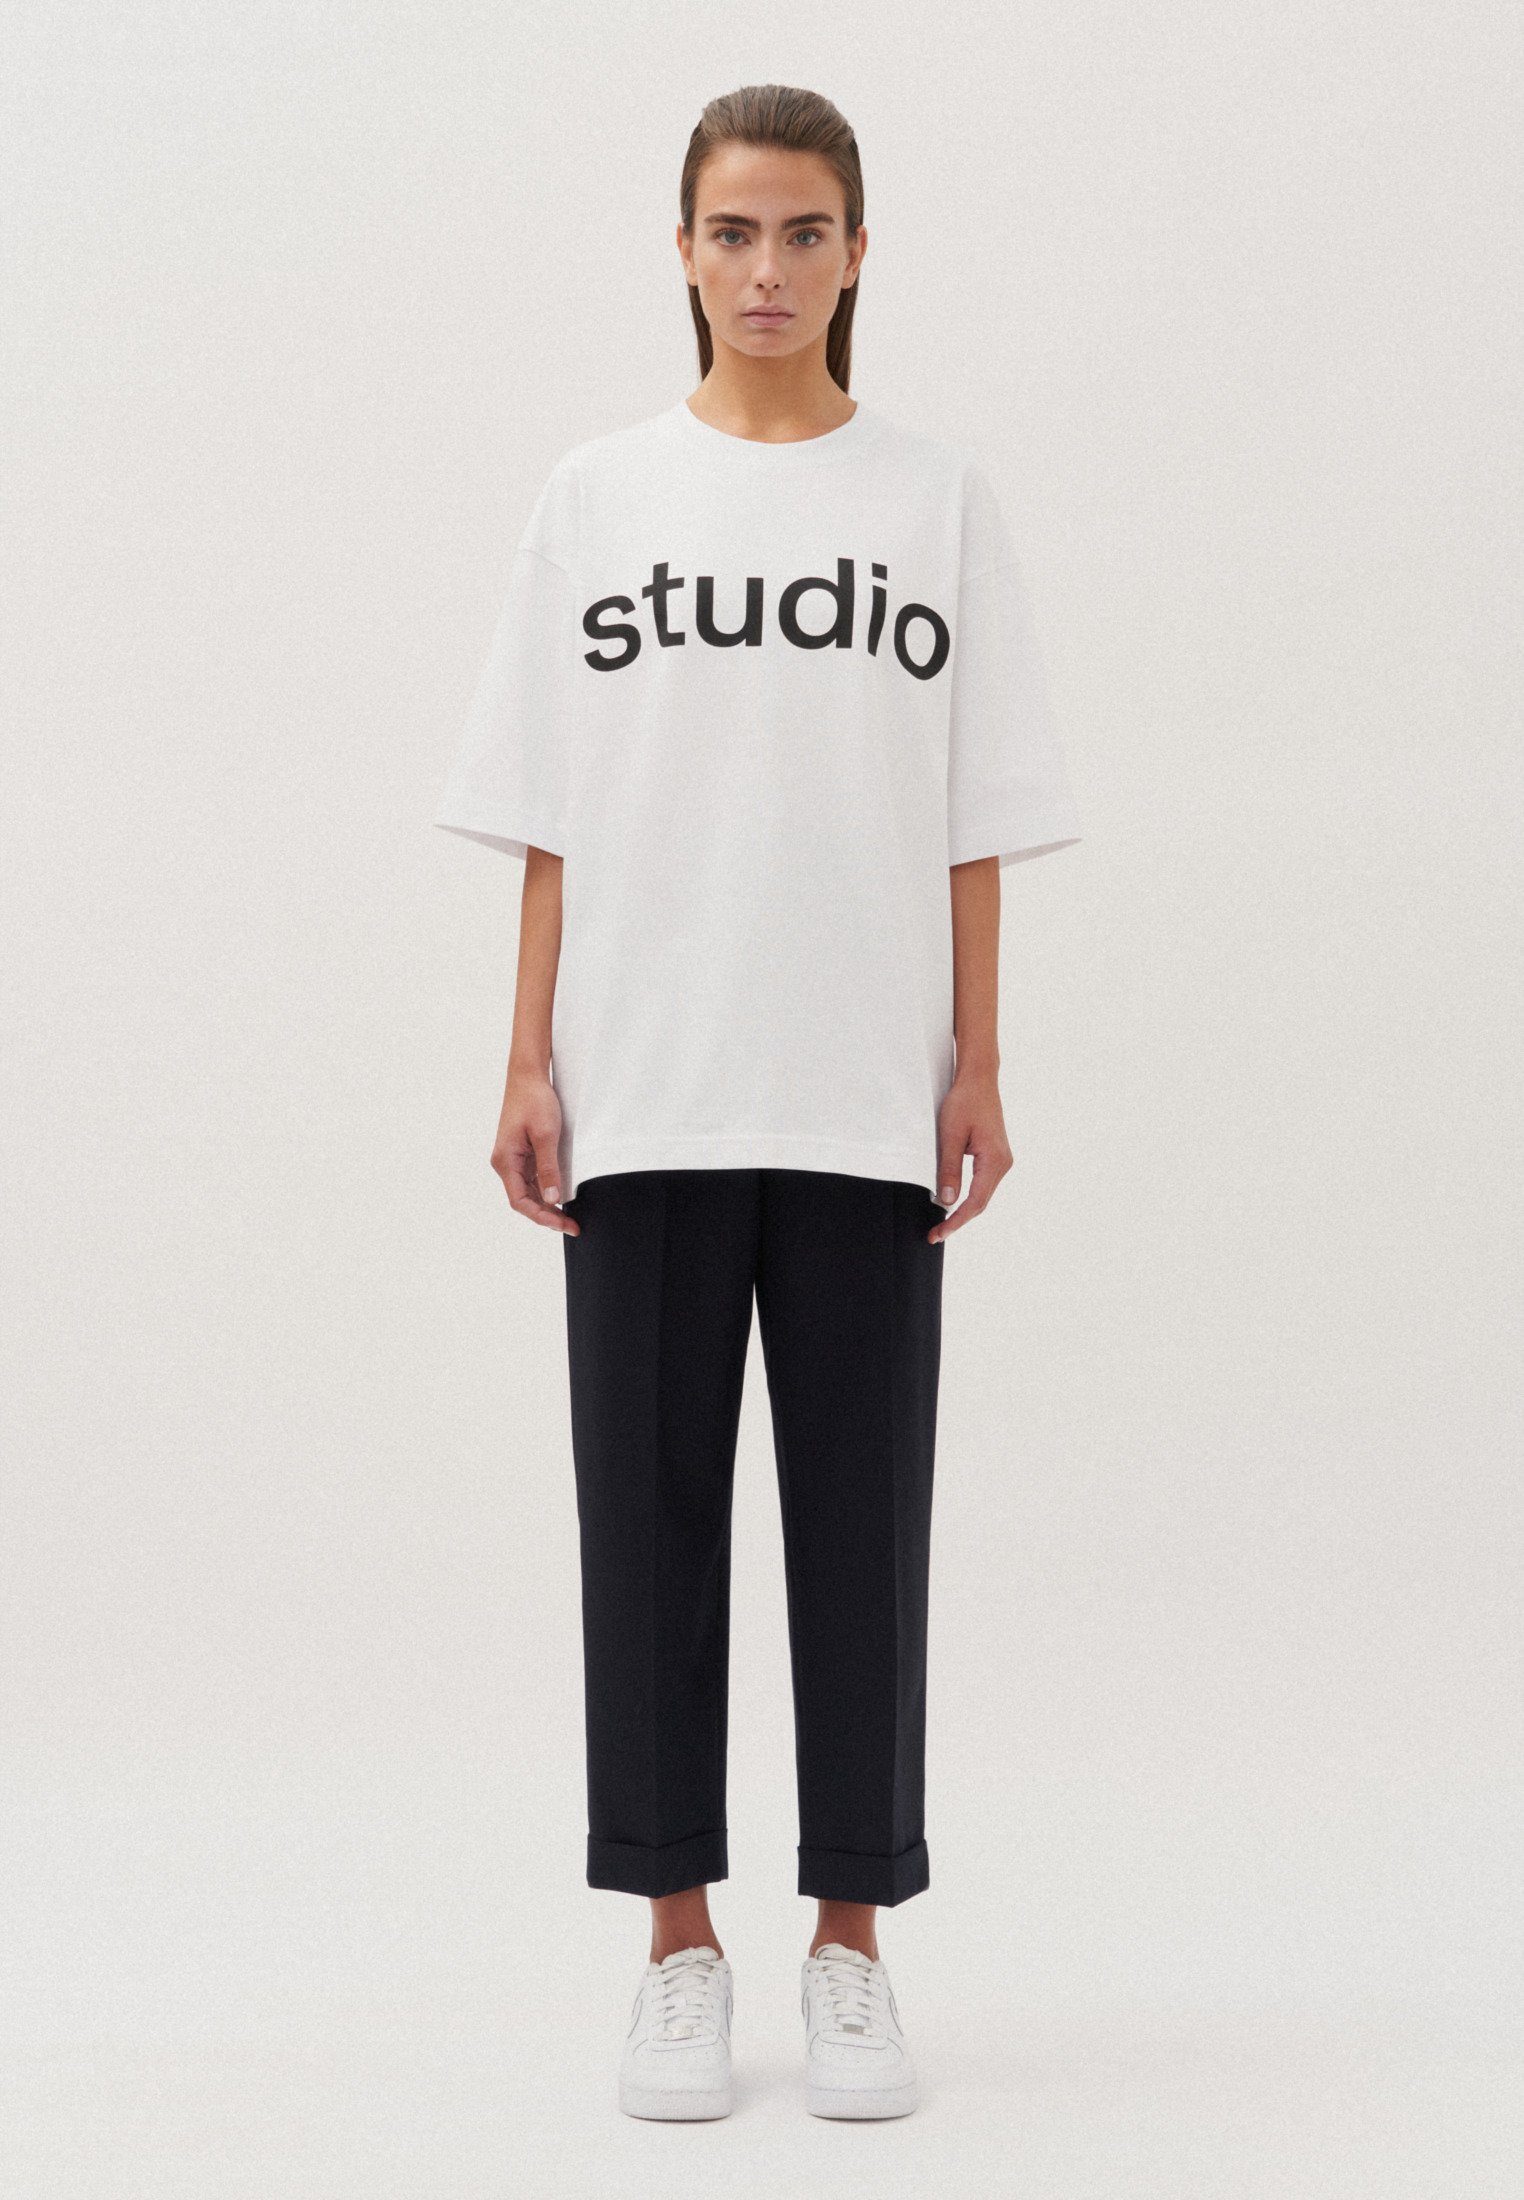 studio seidensticker T-Shirt Studio Kurzarm Rundhals Uni